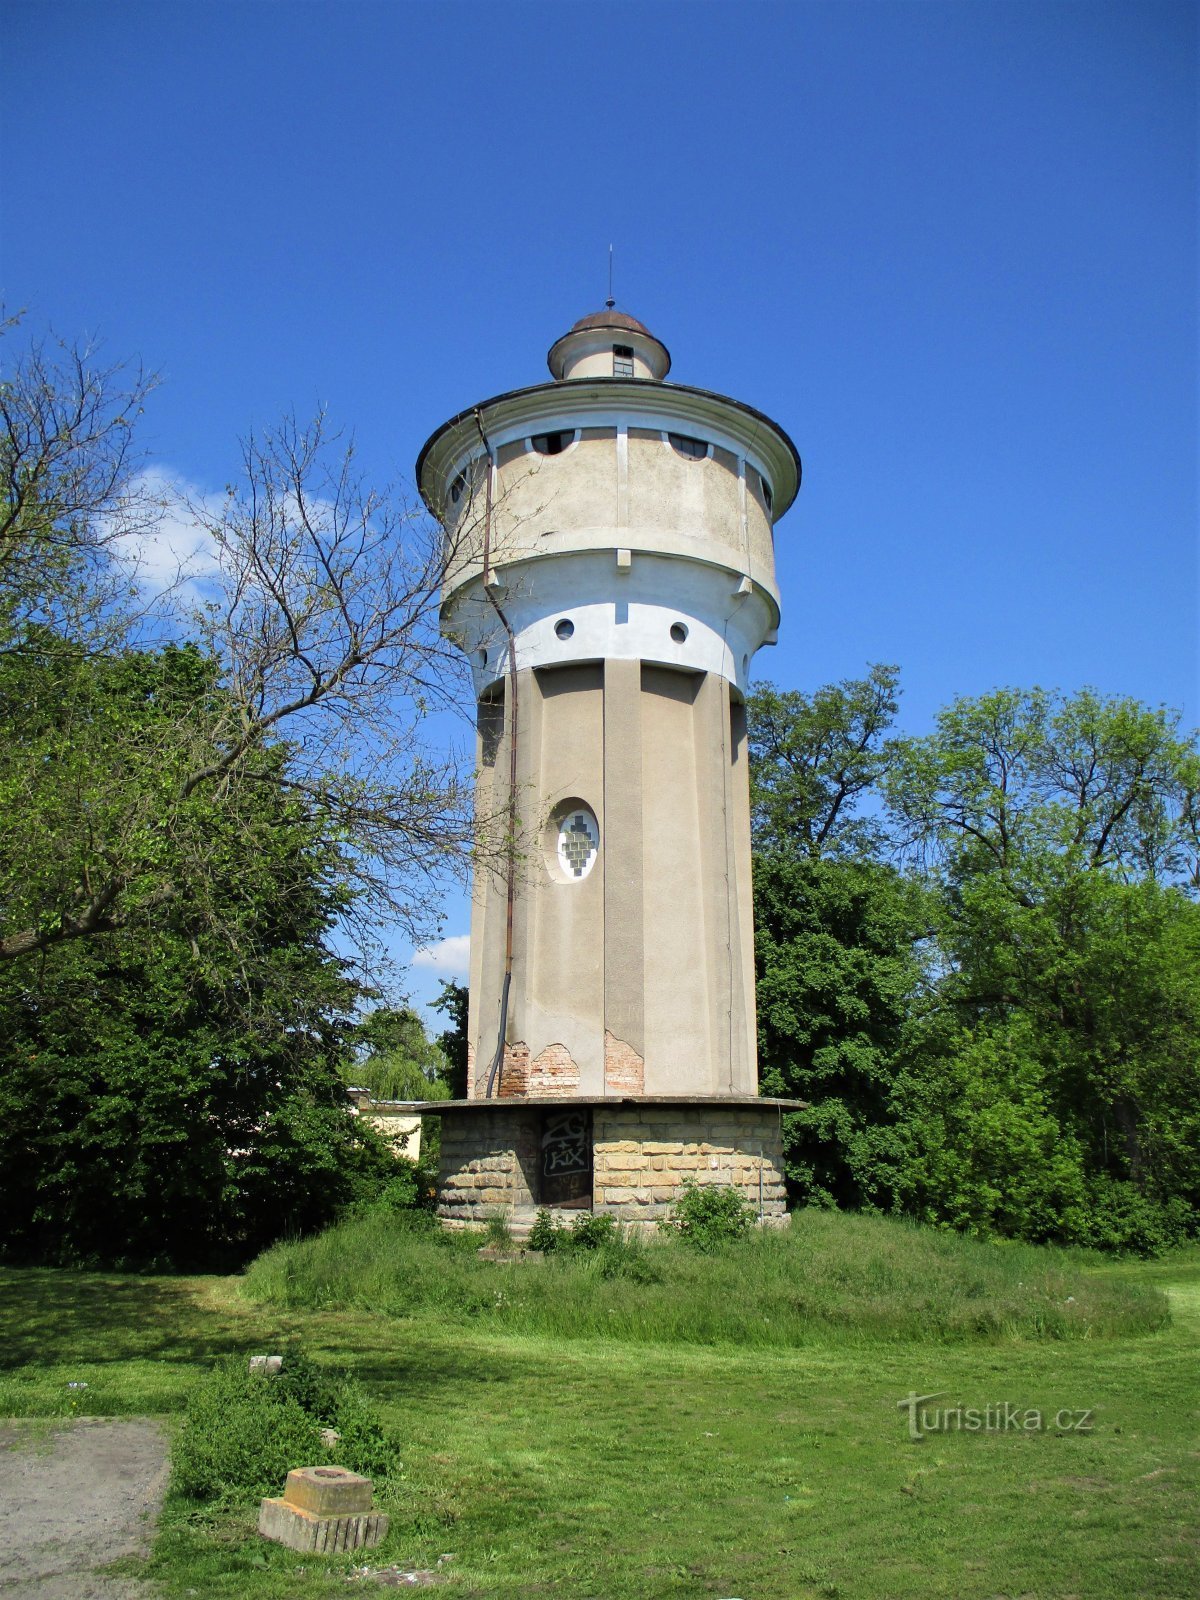 Reservatório da torre (Dašice, 16.5.2020)